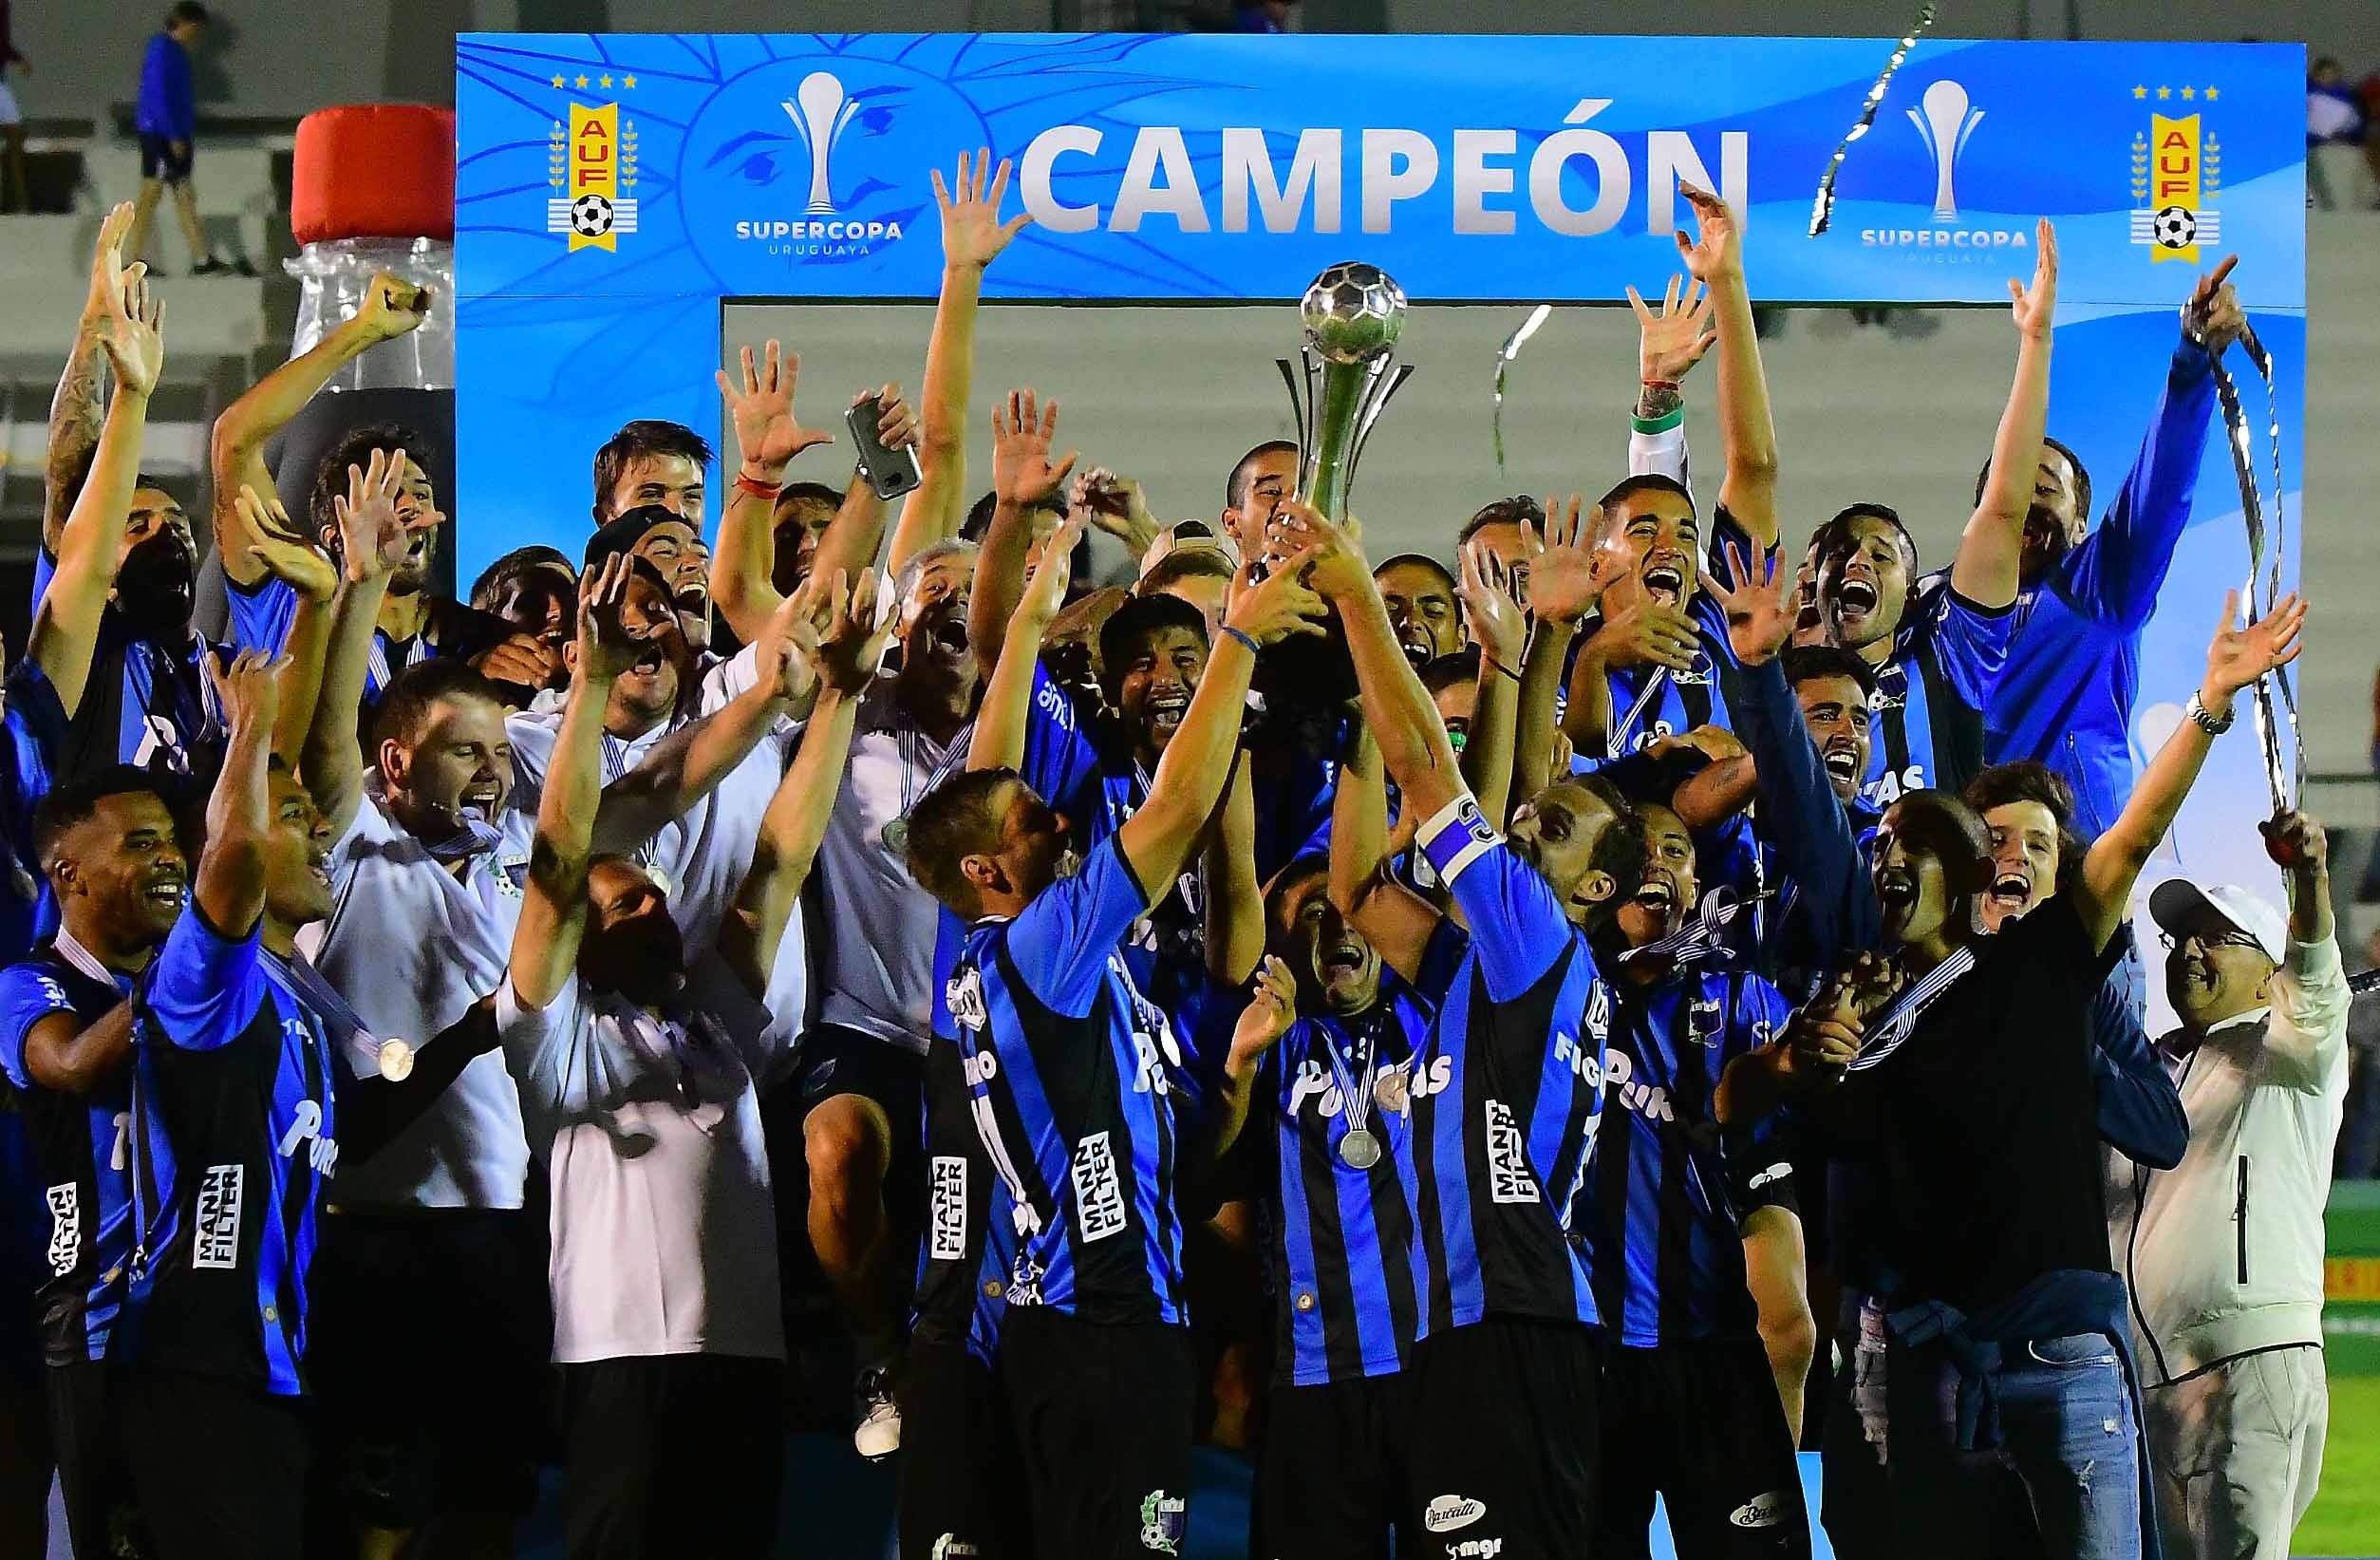 Final de campeonato uruguayo con Liverpool por hacer historia - Prensa  Latina